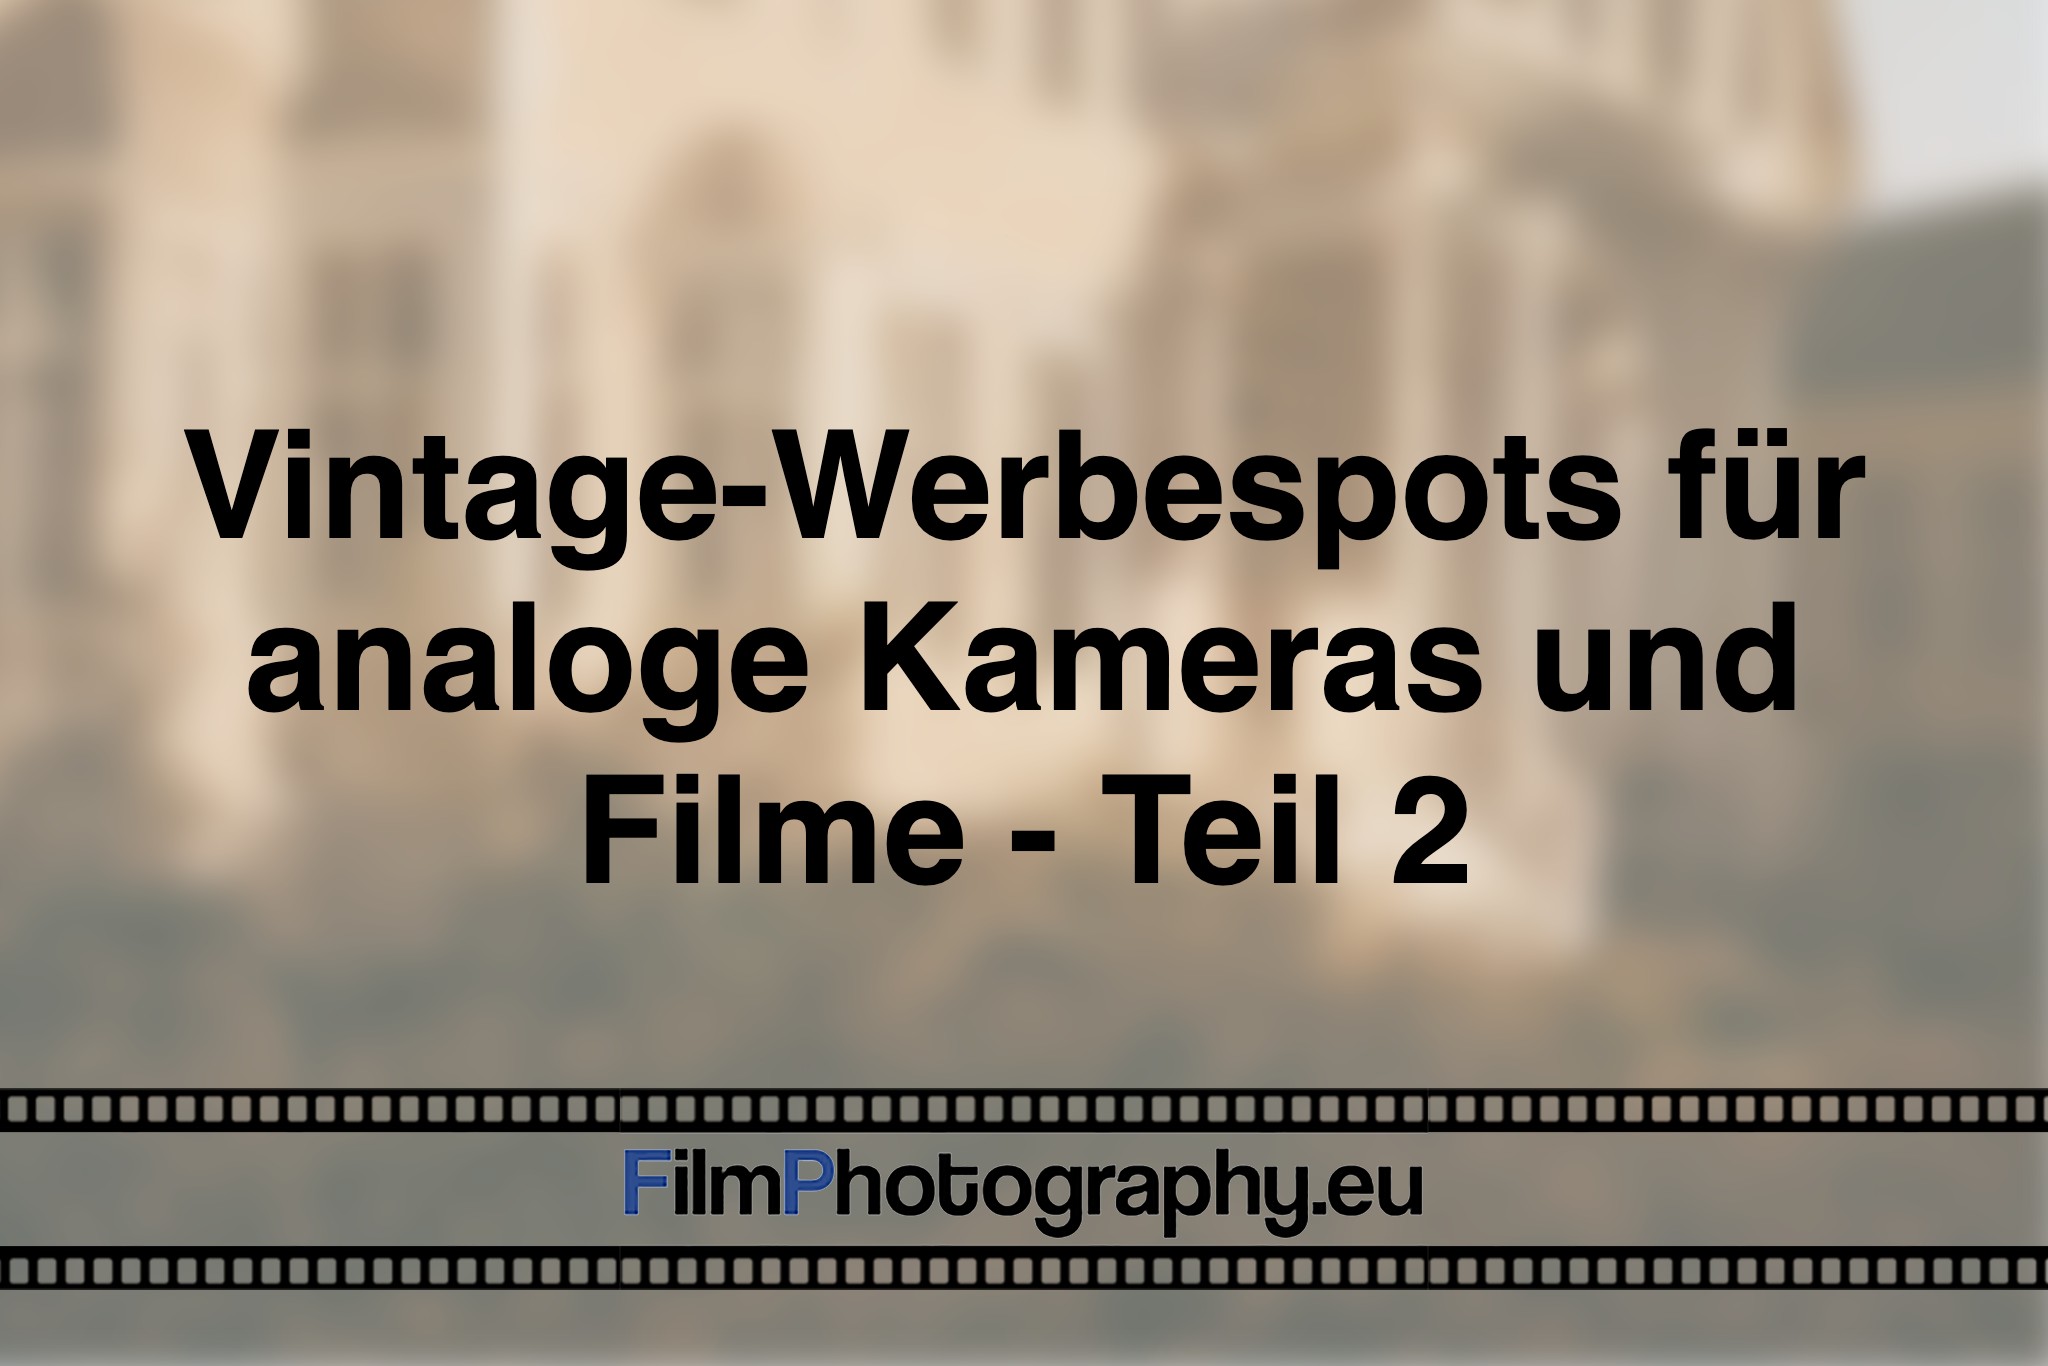 vintage-werbespots-fuer-analoge-kameras-und-filme-teil-2-photo-bnv